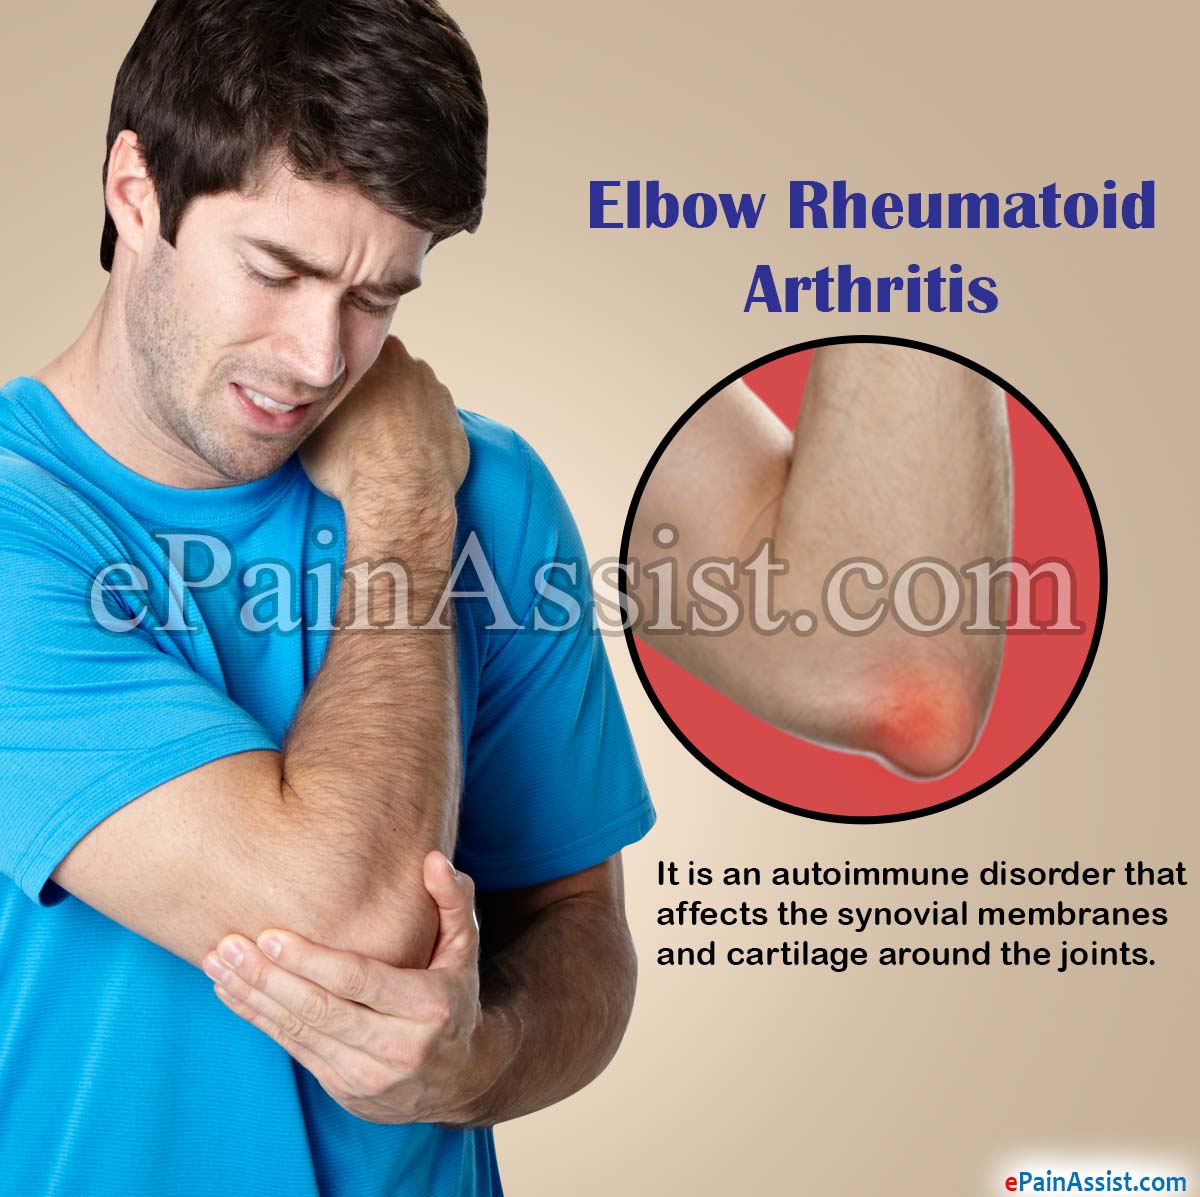 Elbow Rheumatoid Arthritis